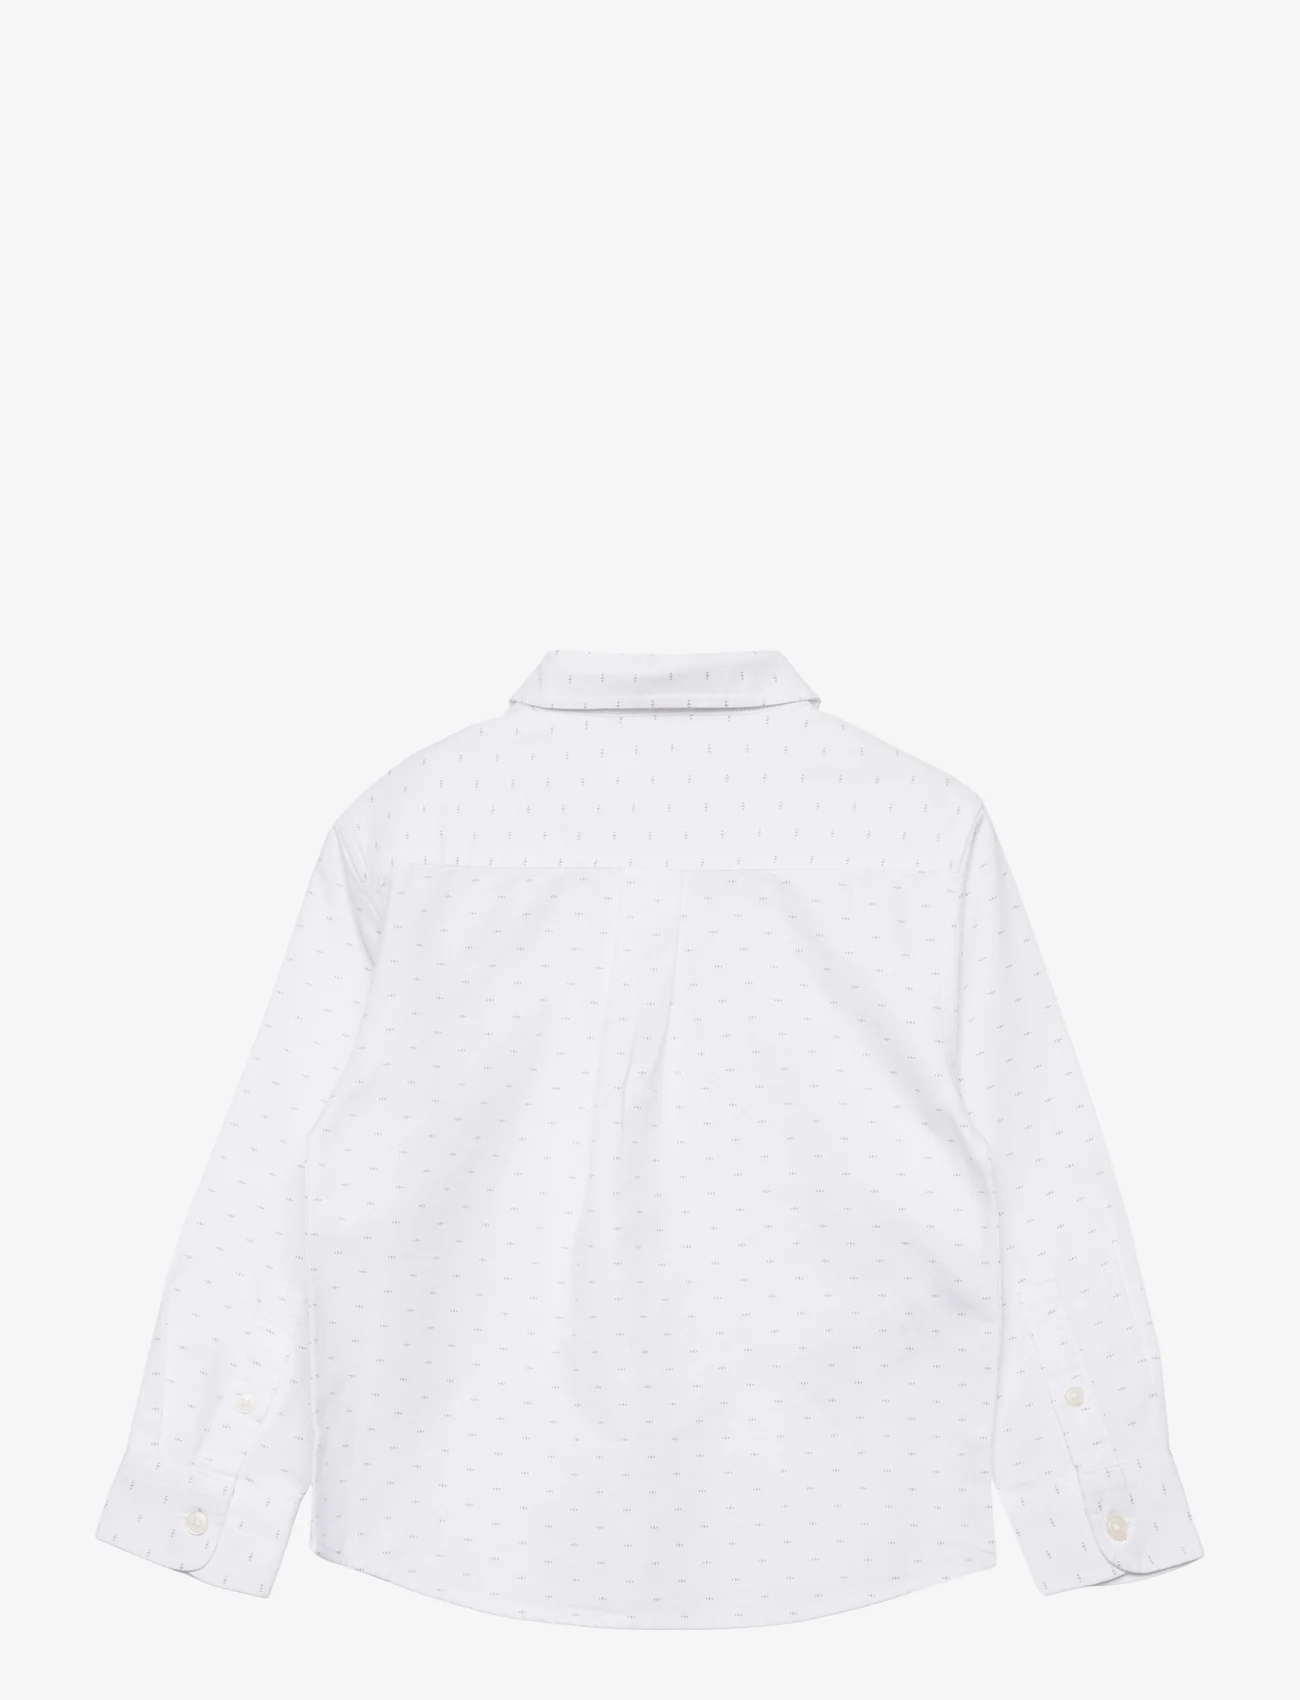 Mango - Printed cotton shirt - langærmede skjorter - white - 1